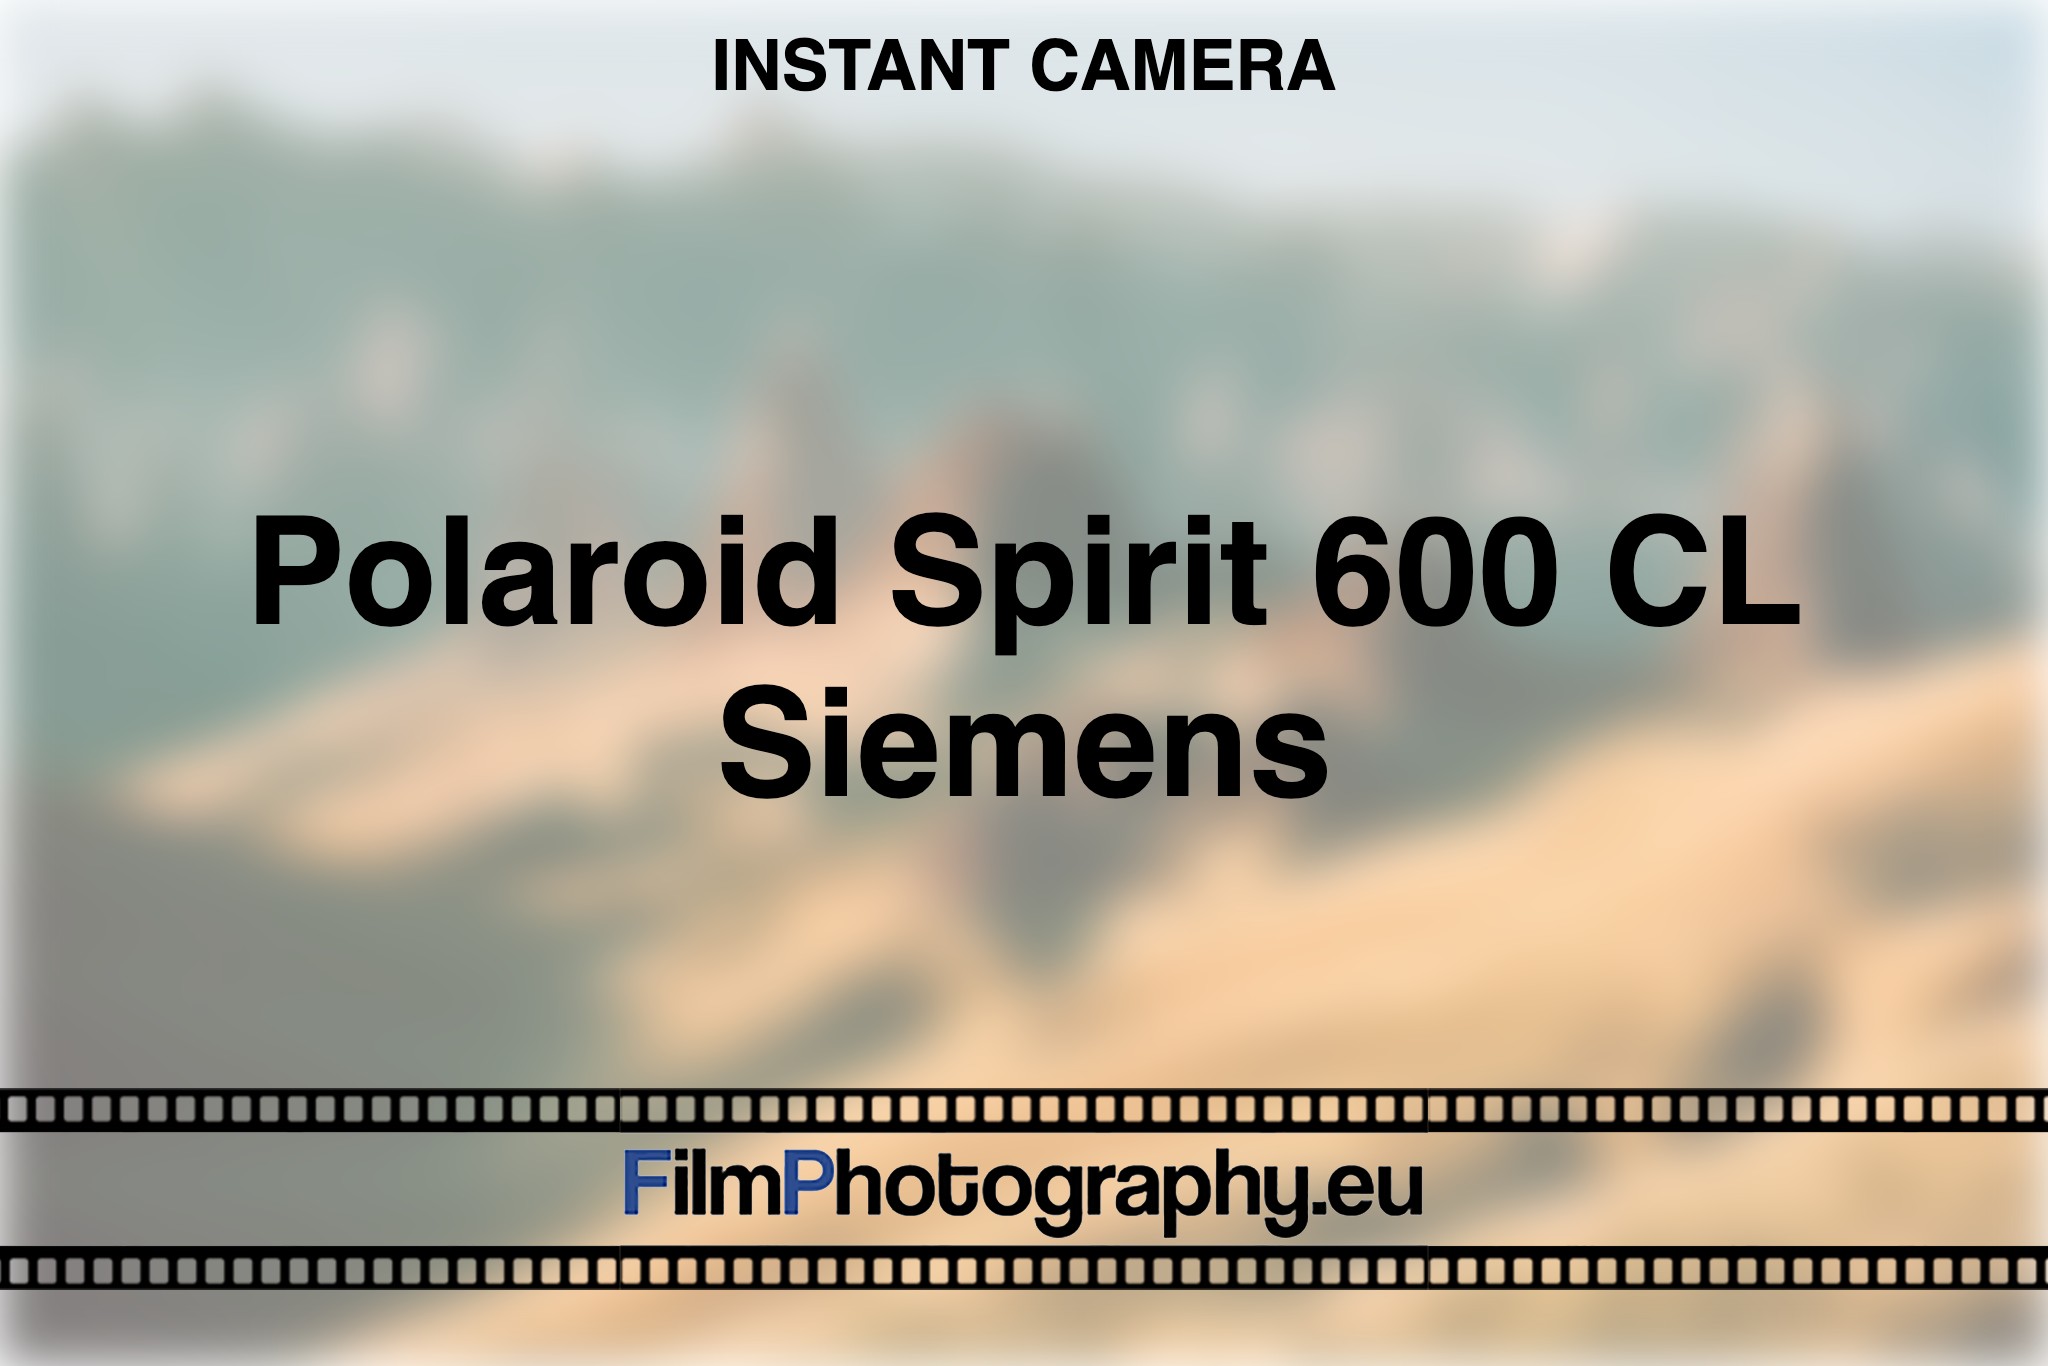 polaroid-spirit-600-cl-siemens-instant-camera-bnv